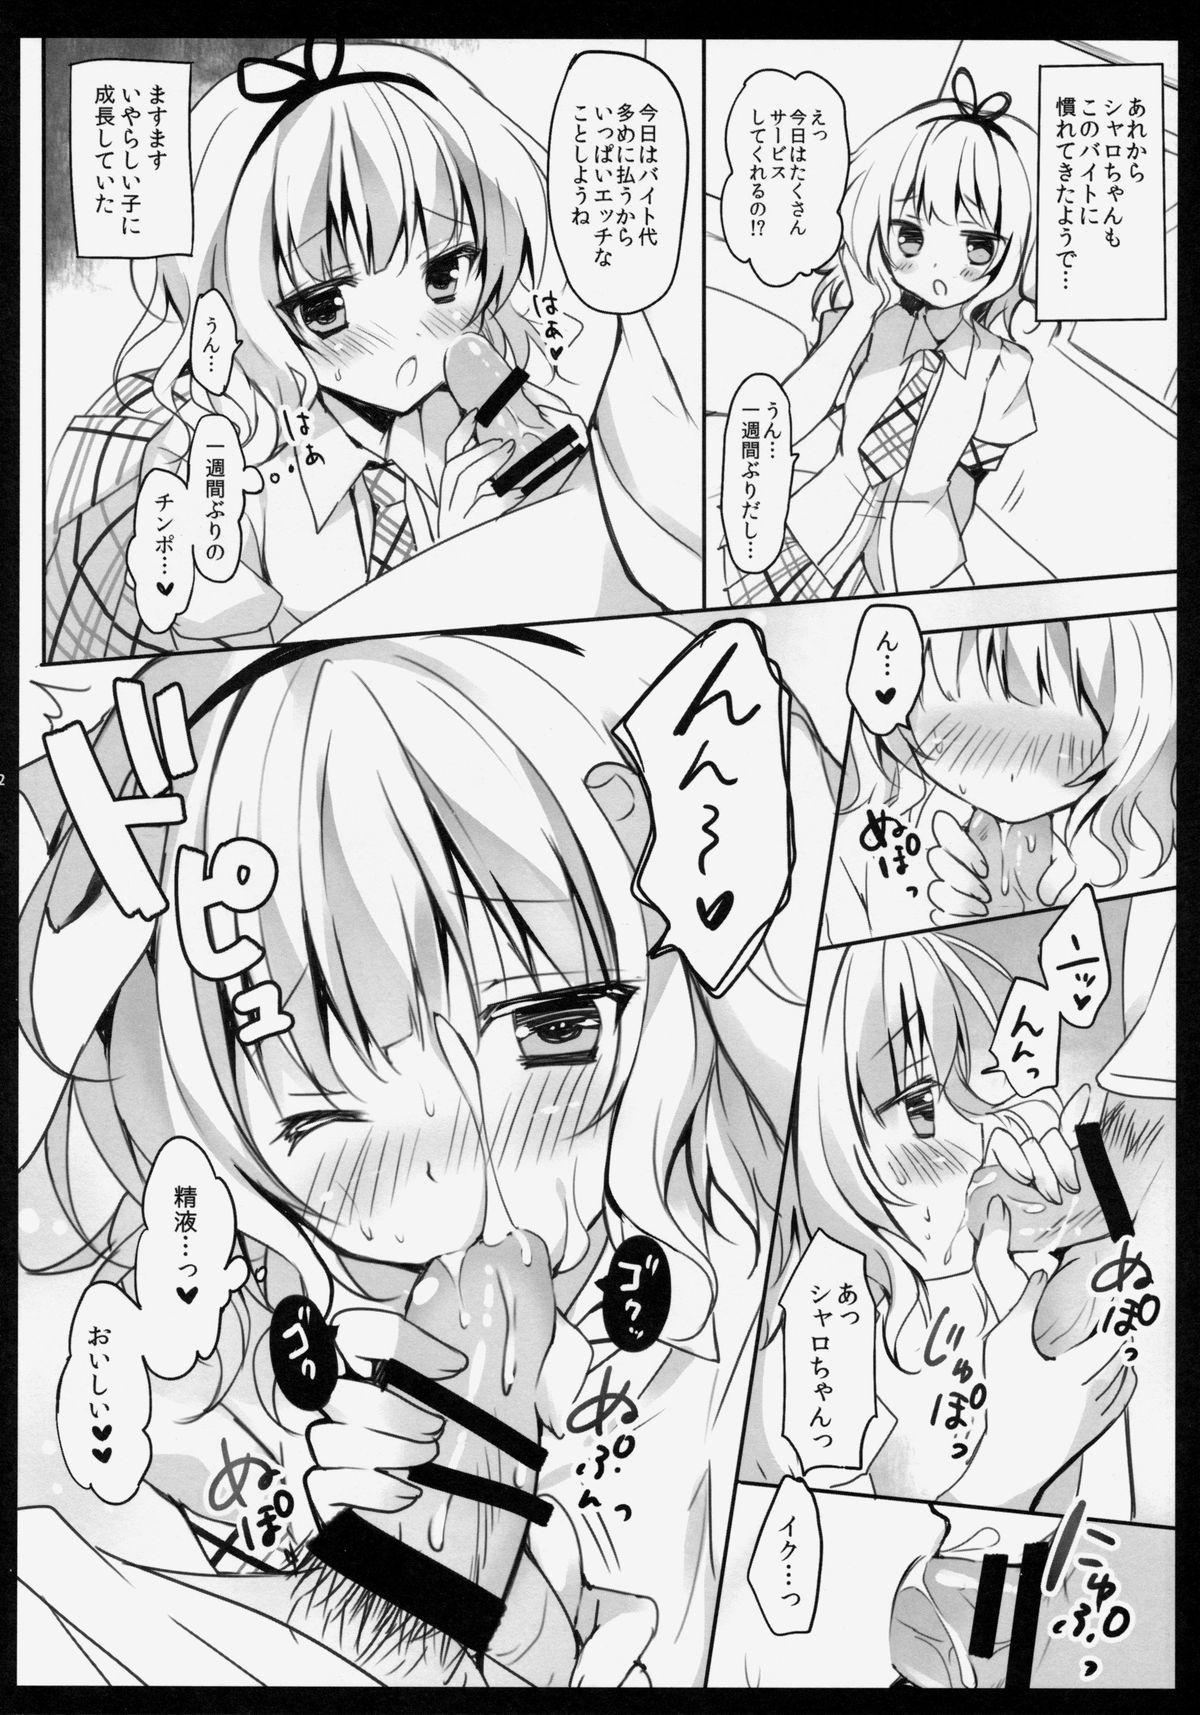 Climax Gochuumon wa Sharo-chan desu ka? - Gochuumon wa usagi desu ka Free 18 Year Old Porn - Page 11